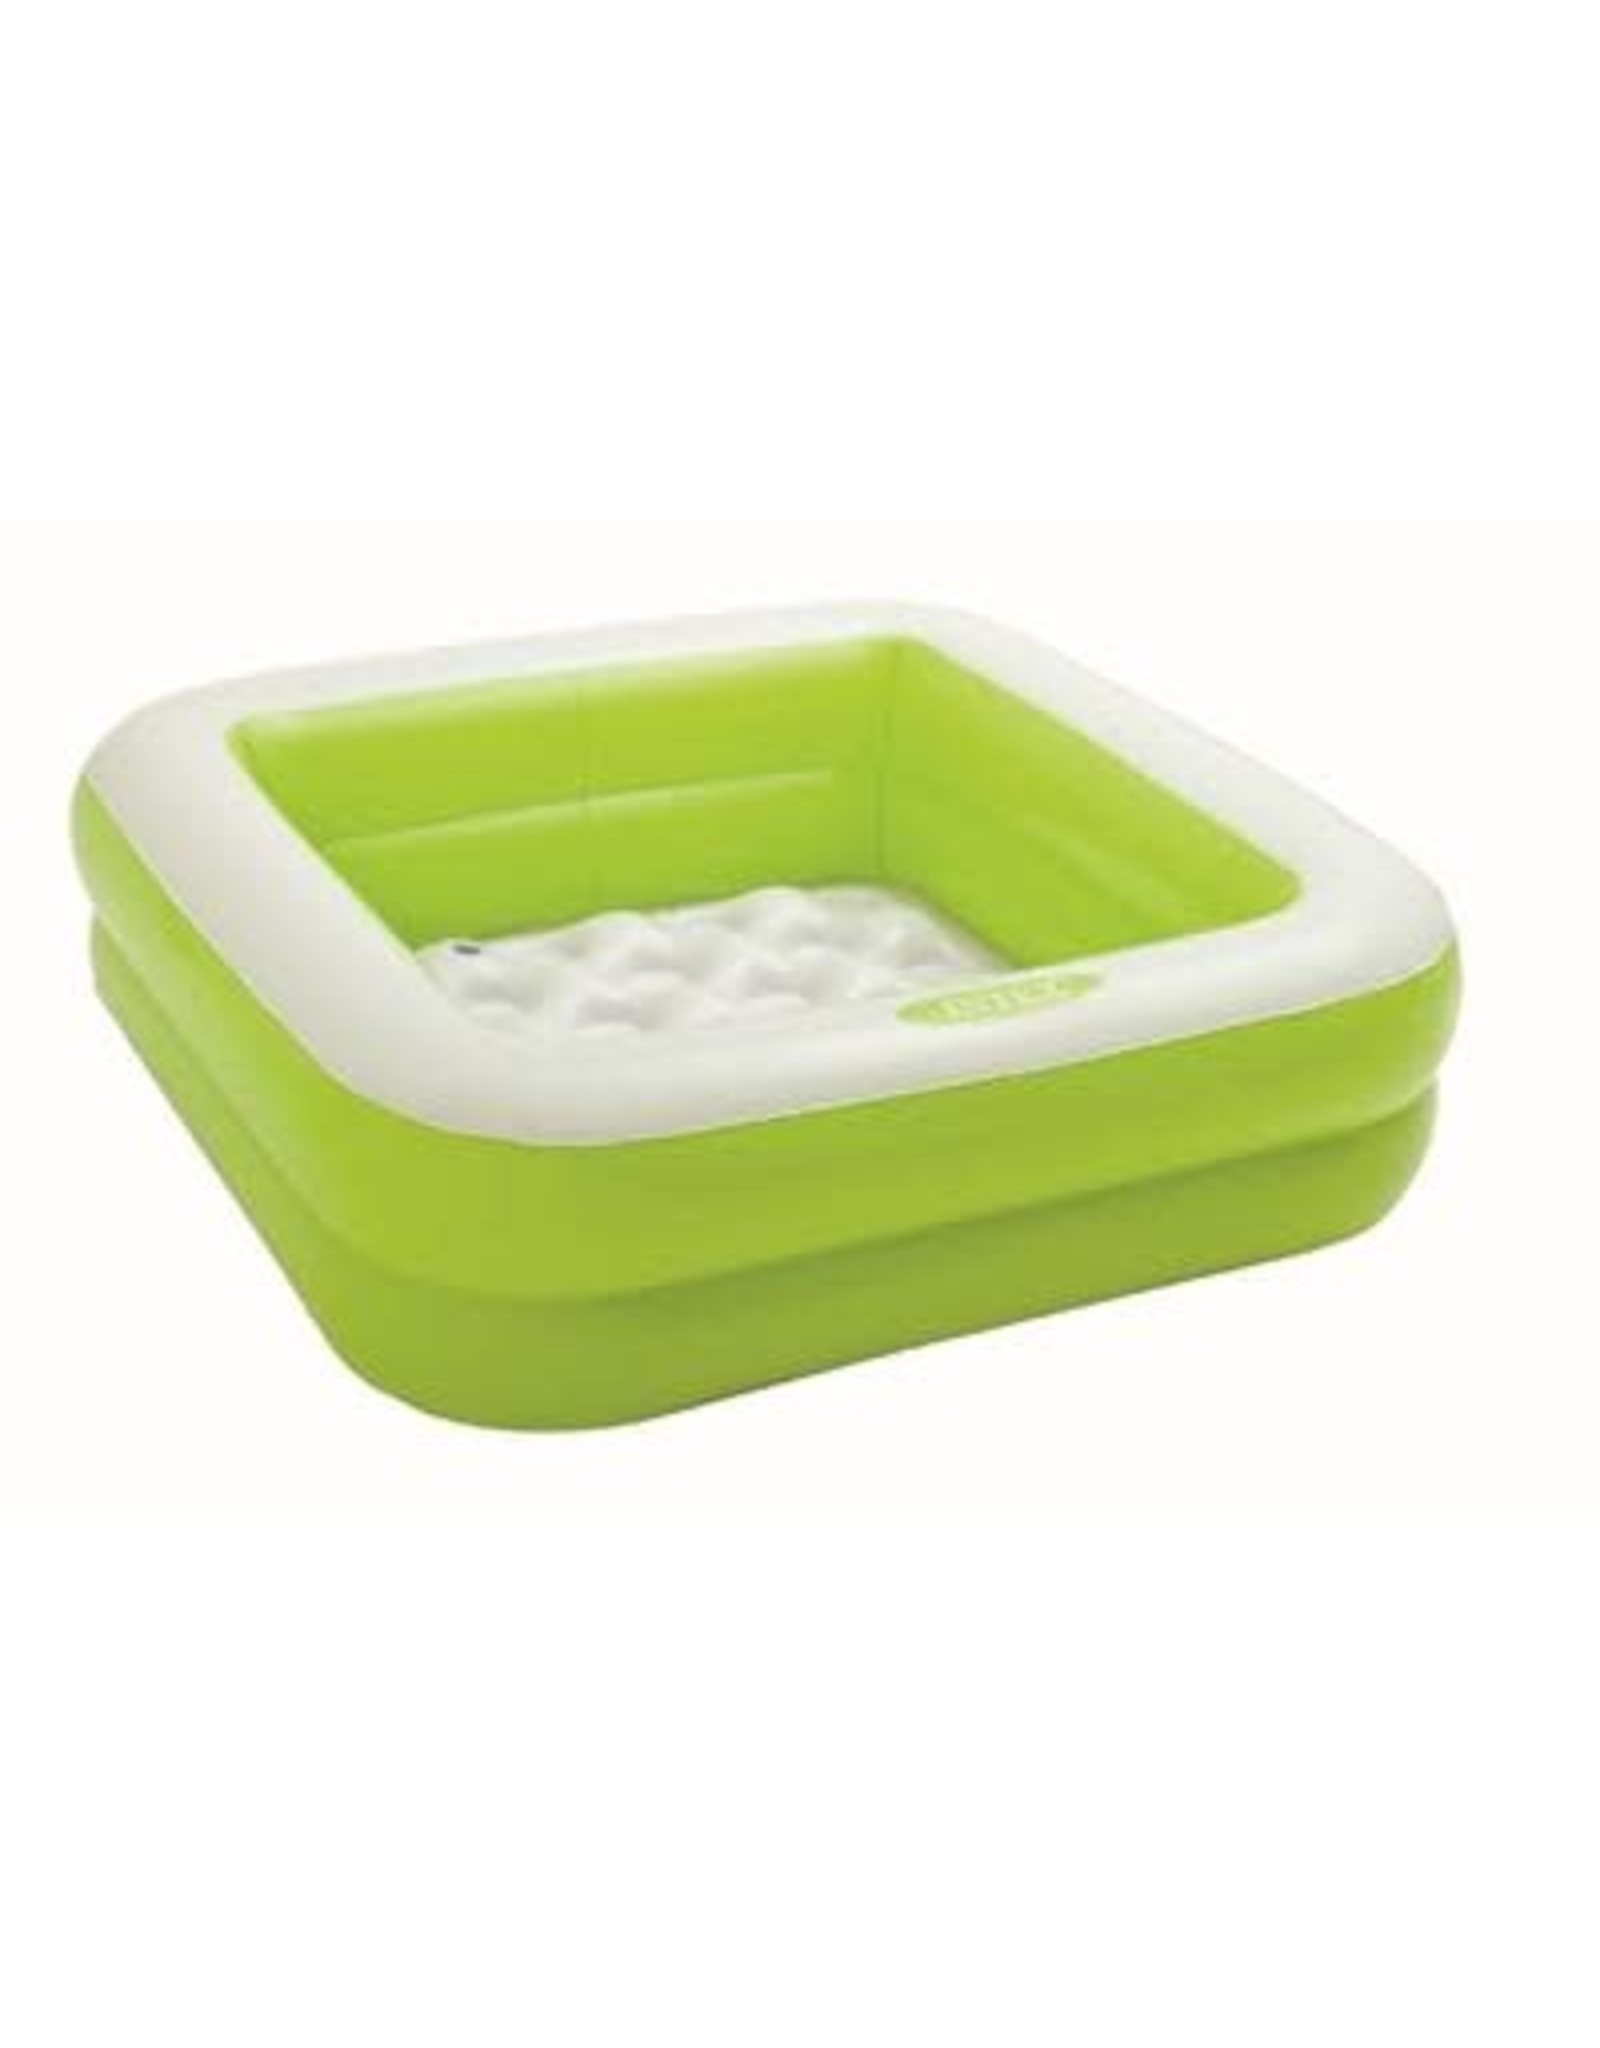 Intex Intex Play Box Pool 85x85x23cm - zwembad vierkant  groen/wit